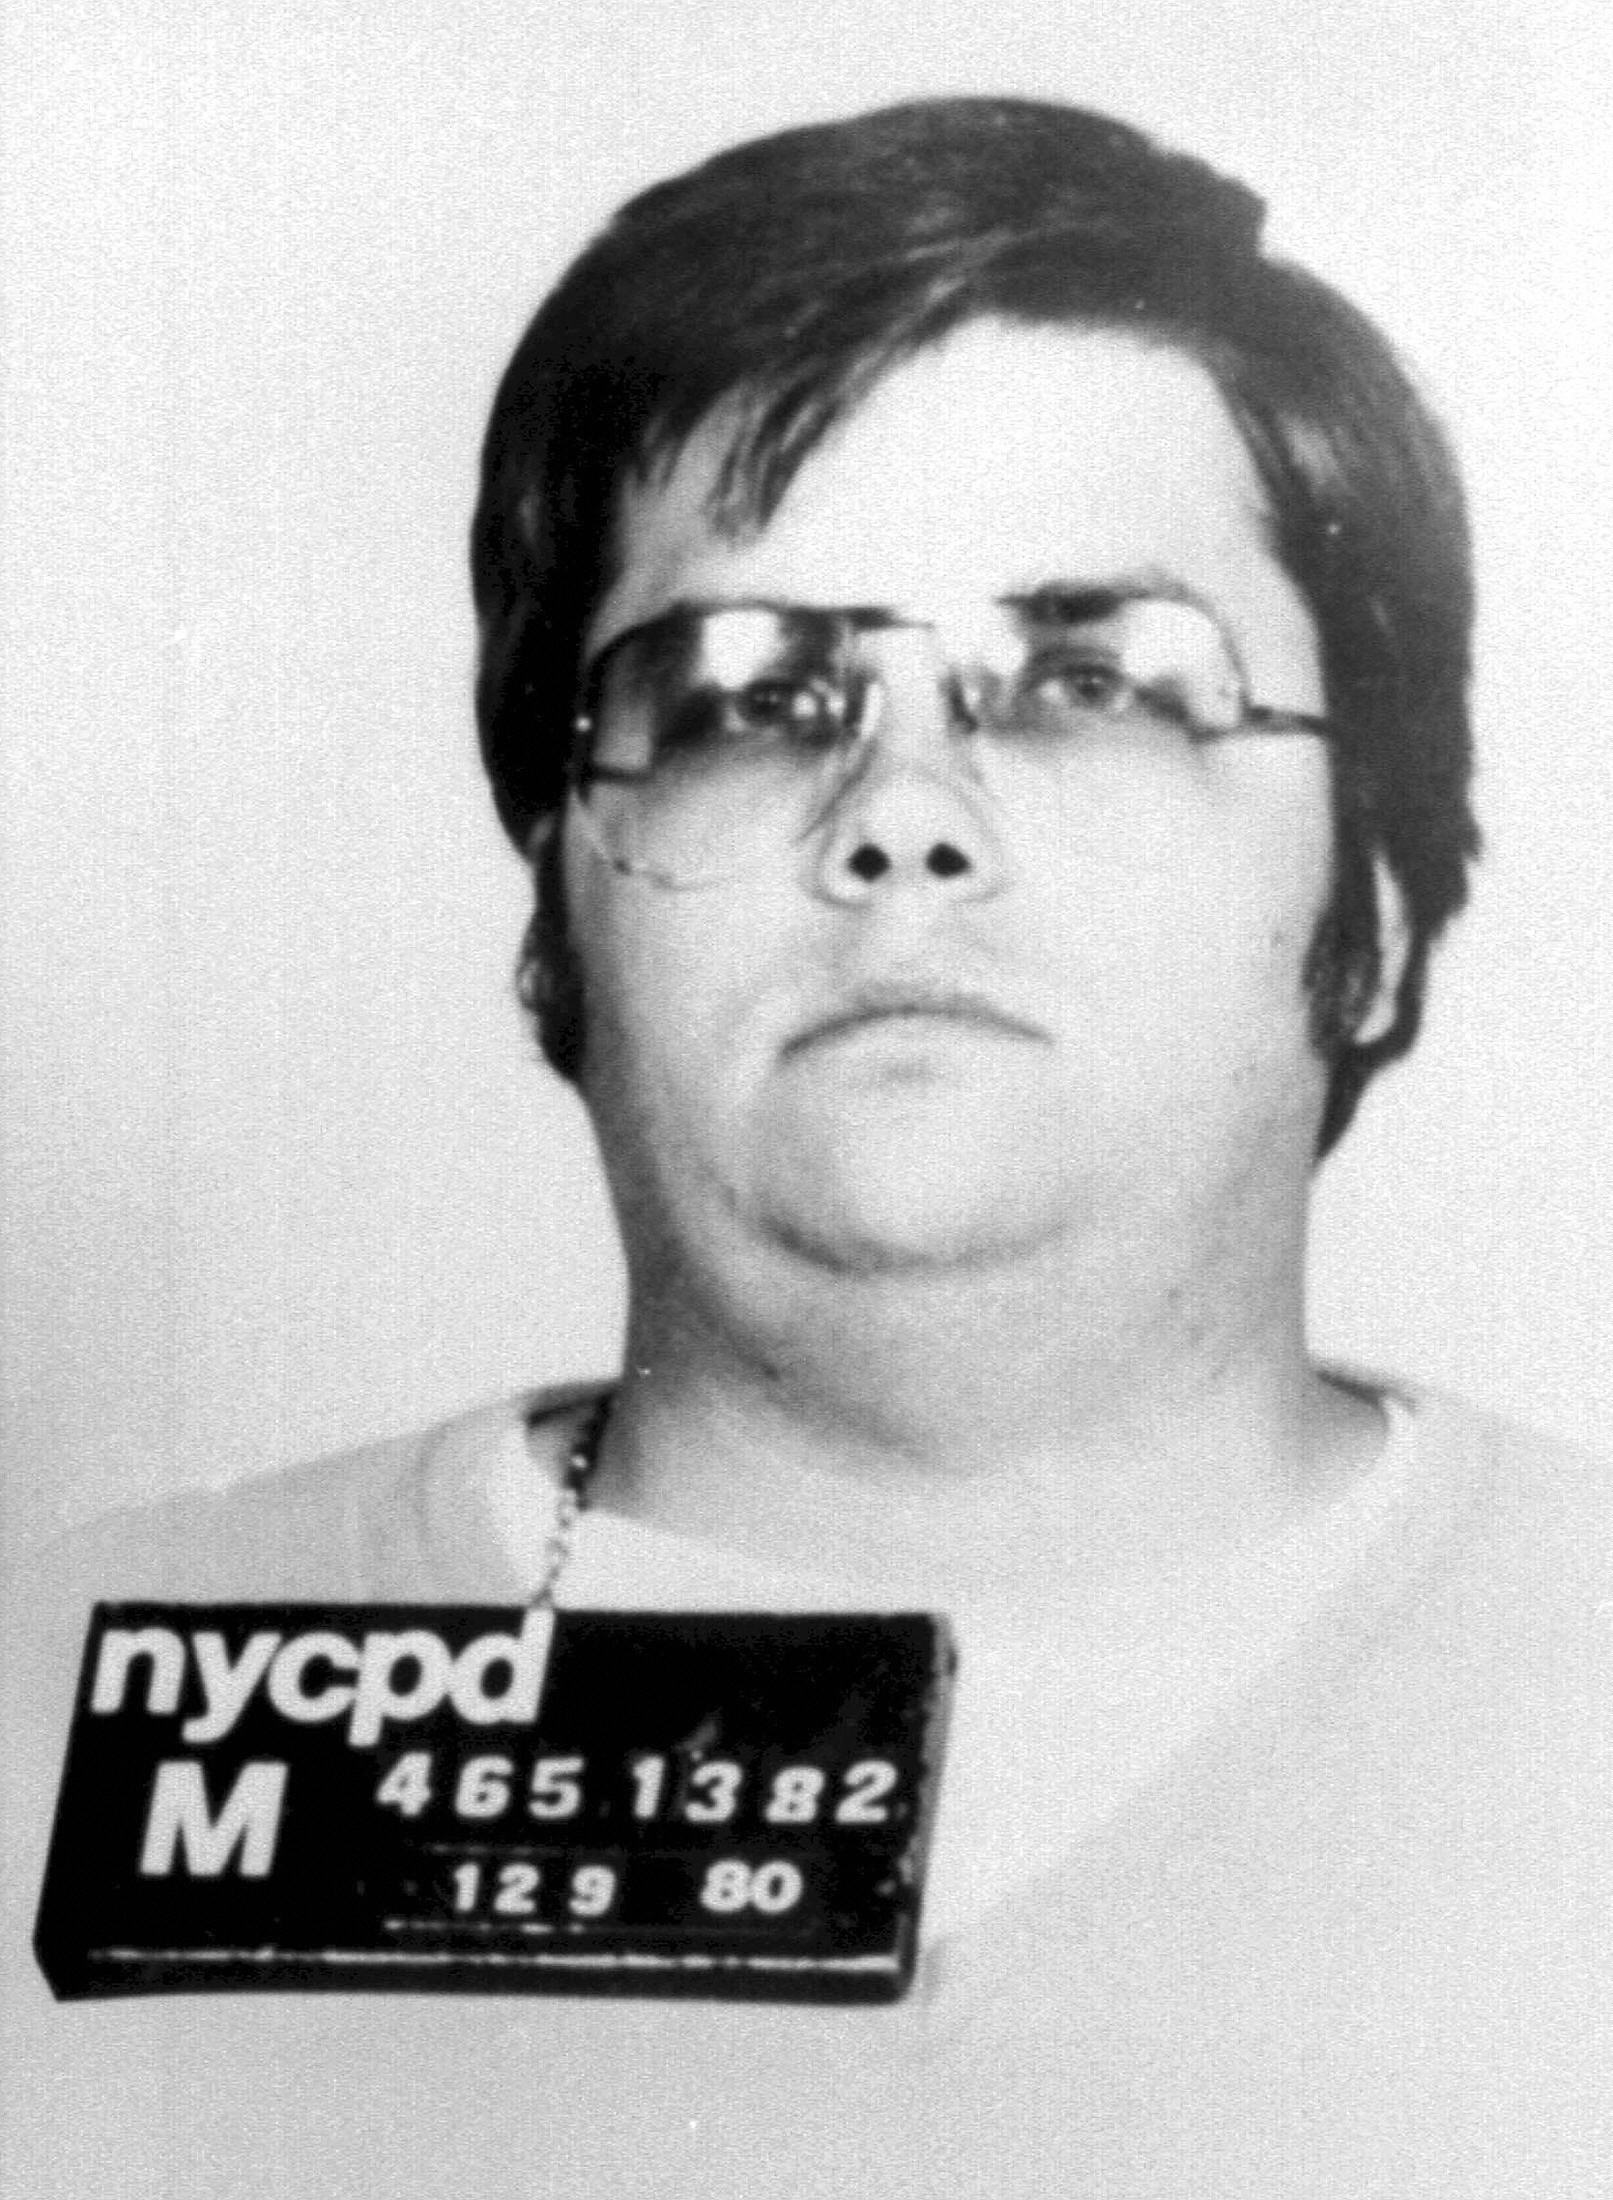 Mark David Chapman was convicted of murdering John Lennon outside Lennon's Manhattan apartment on December 8, 1980.